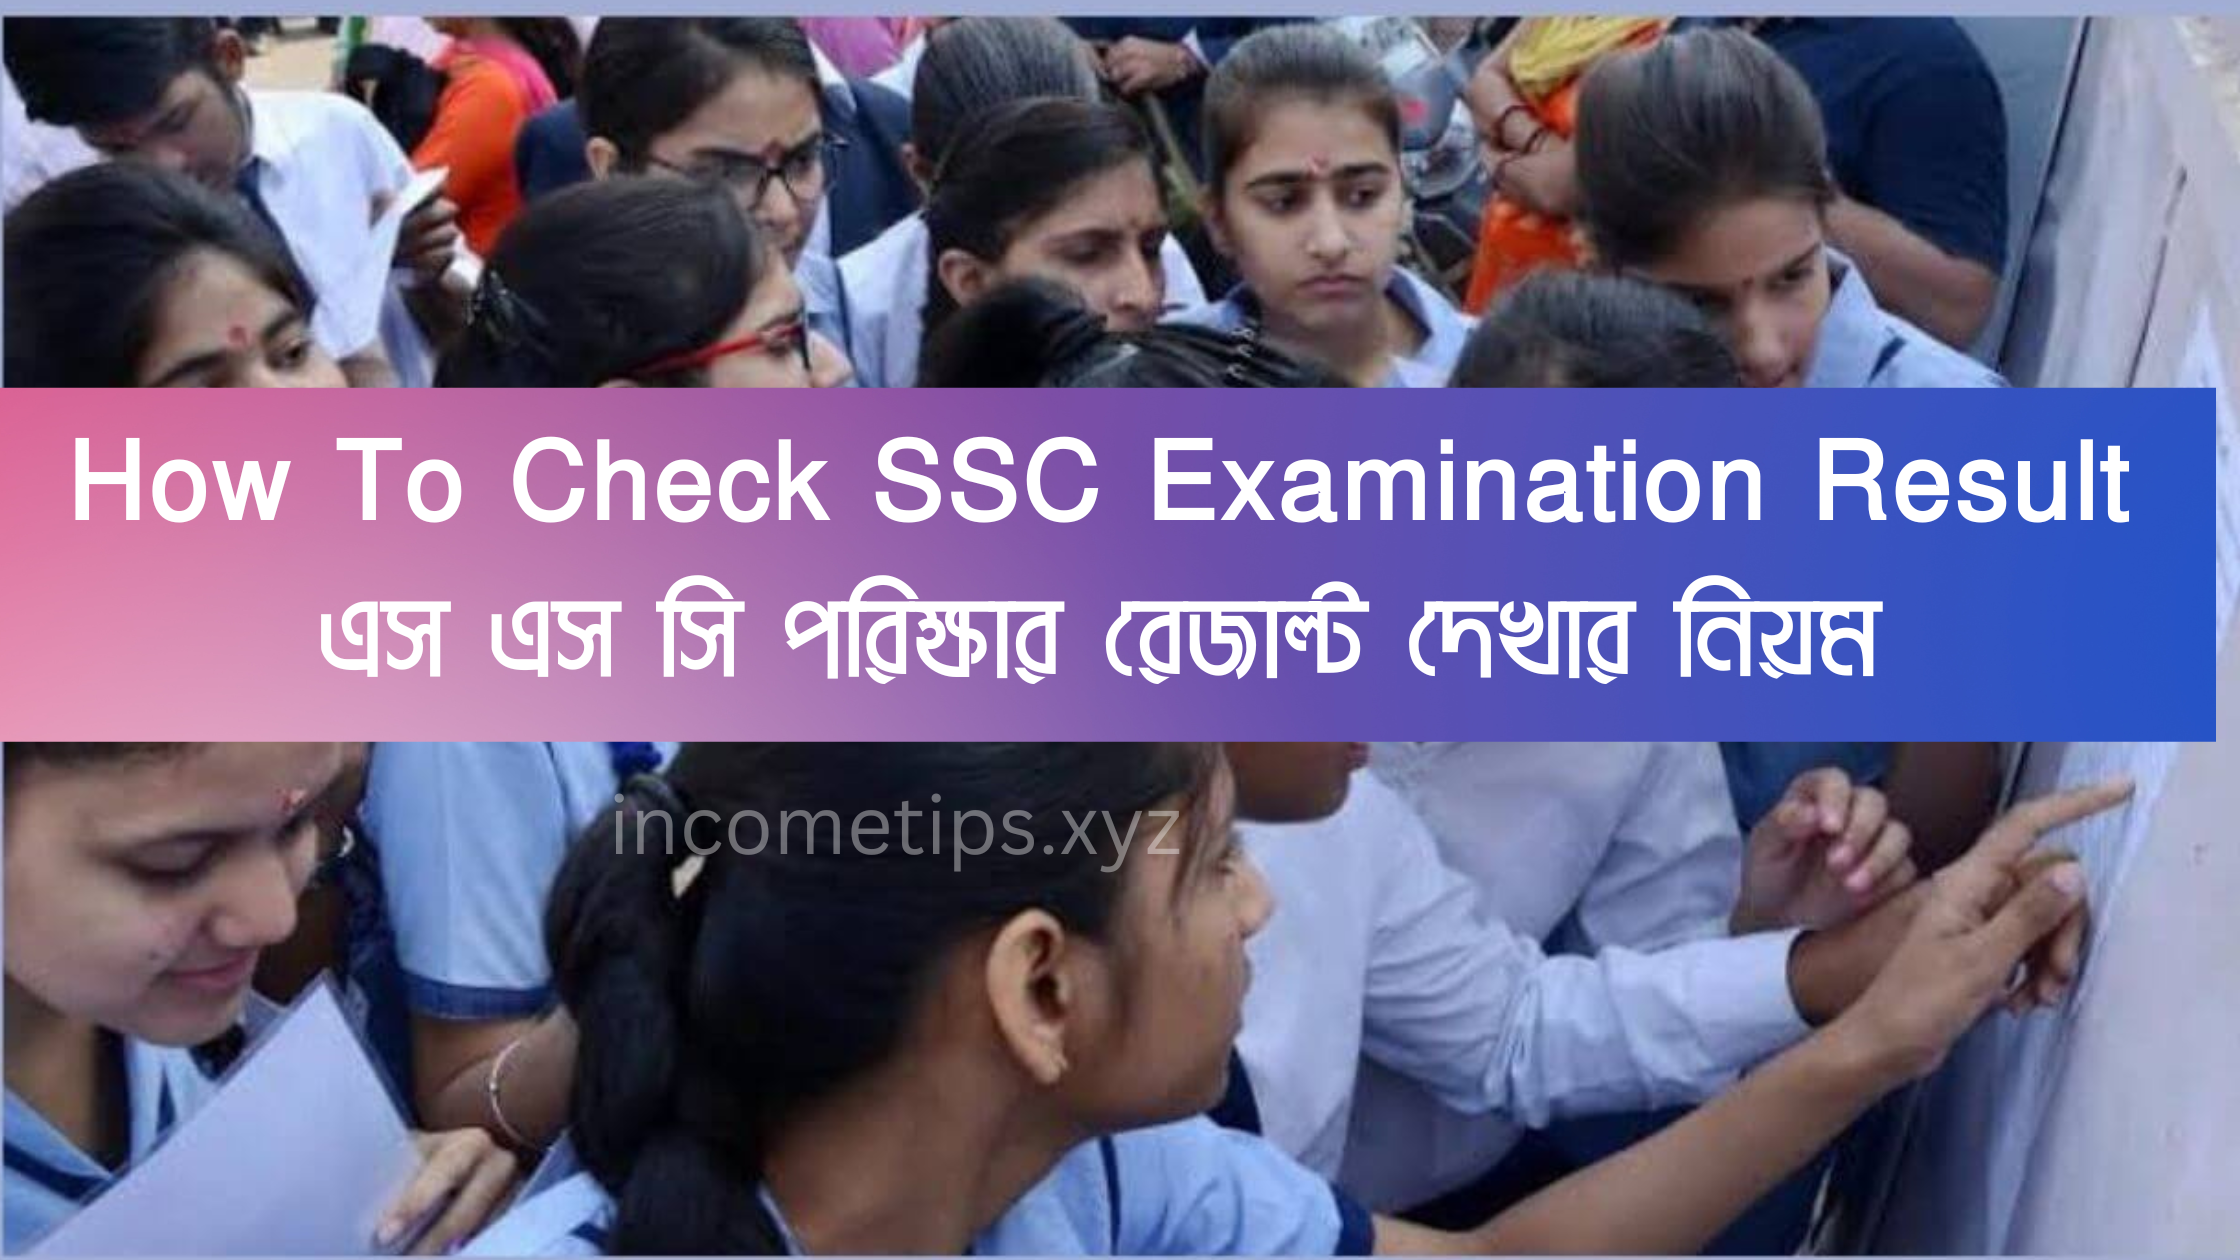 How To Check SSC Examination Result এস এস সি পরিক্ষার রেজাল্ট দেখার নিয়ম